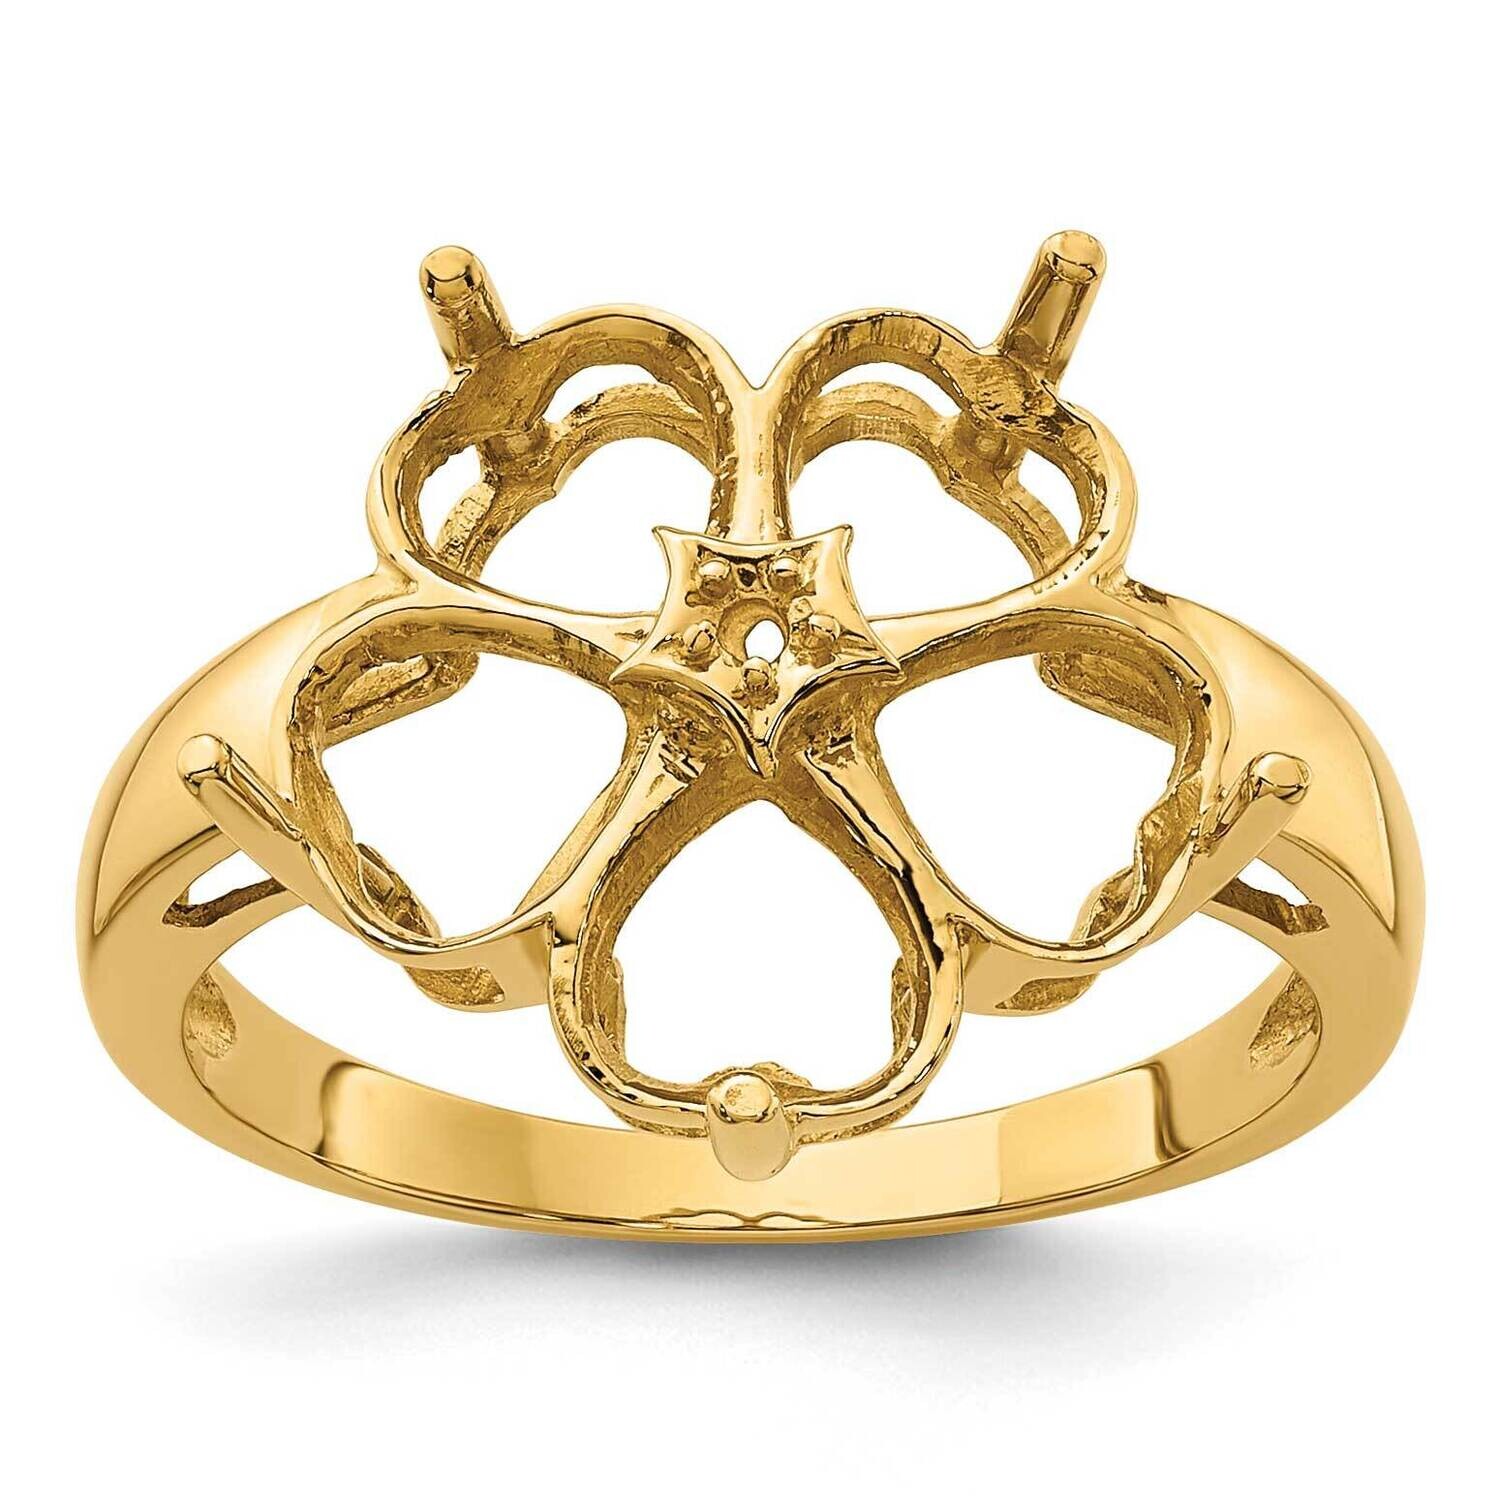 Diamond & Gemstone Ring Mounting 14k Gold Y4583